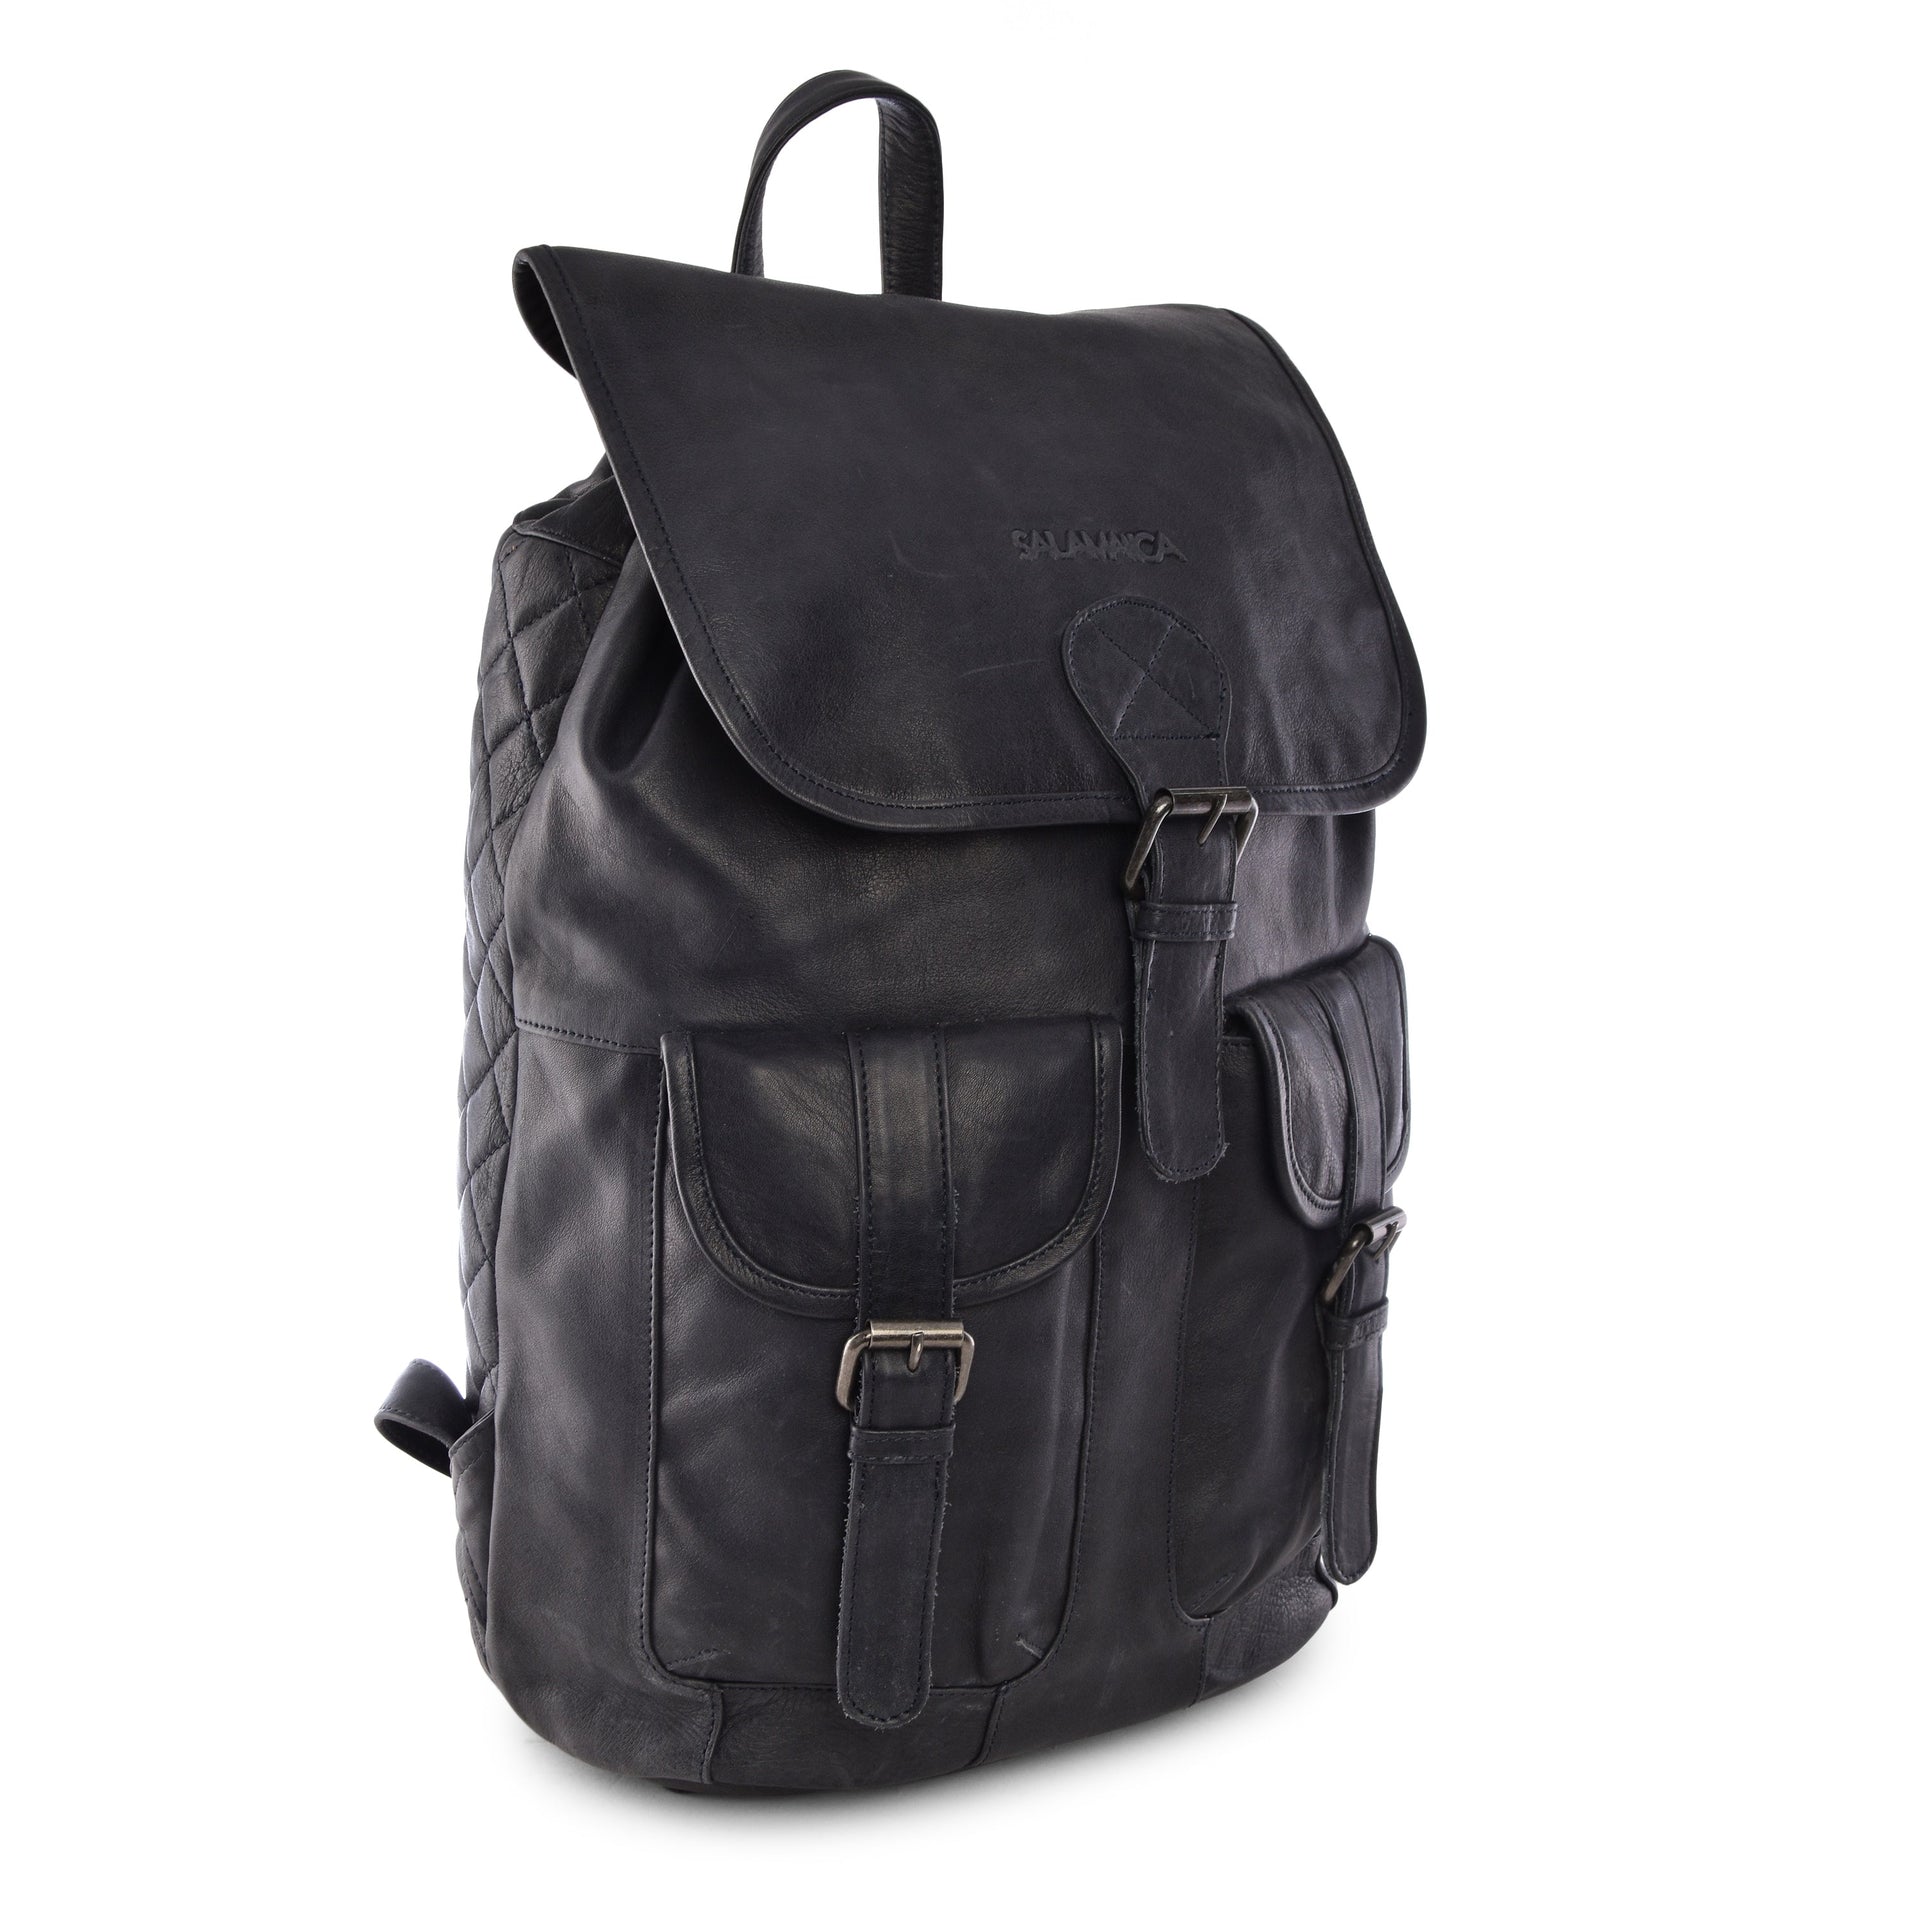 Spruce Backpack - Backpack